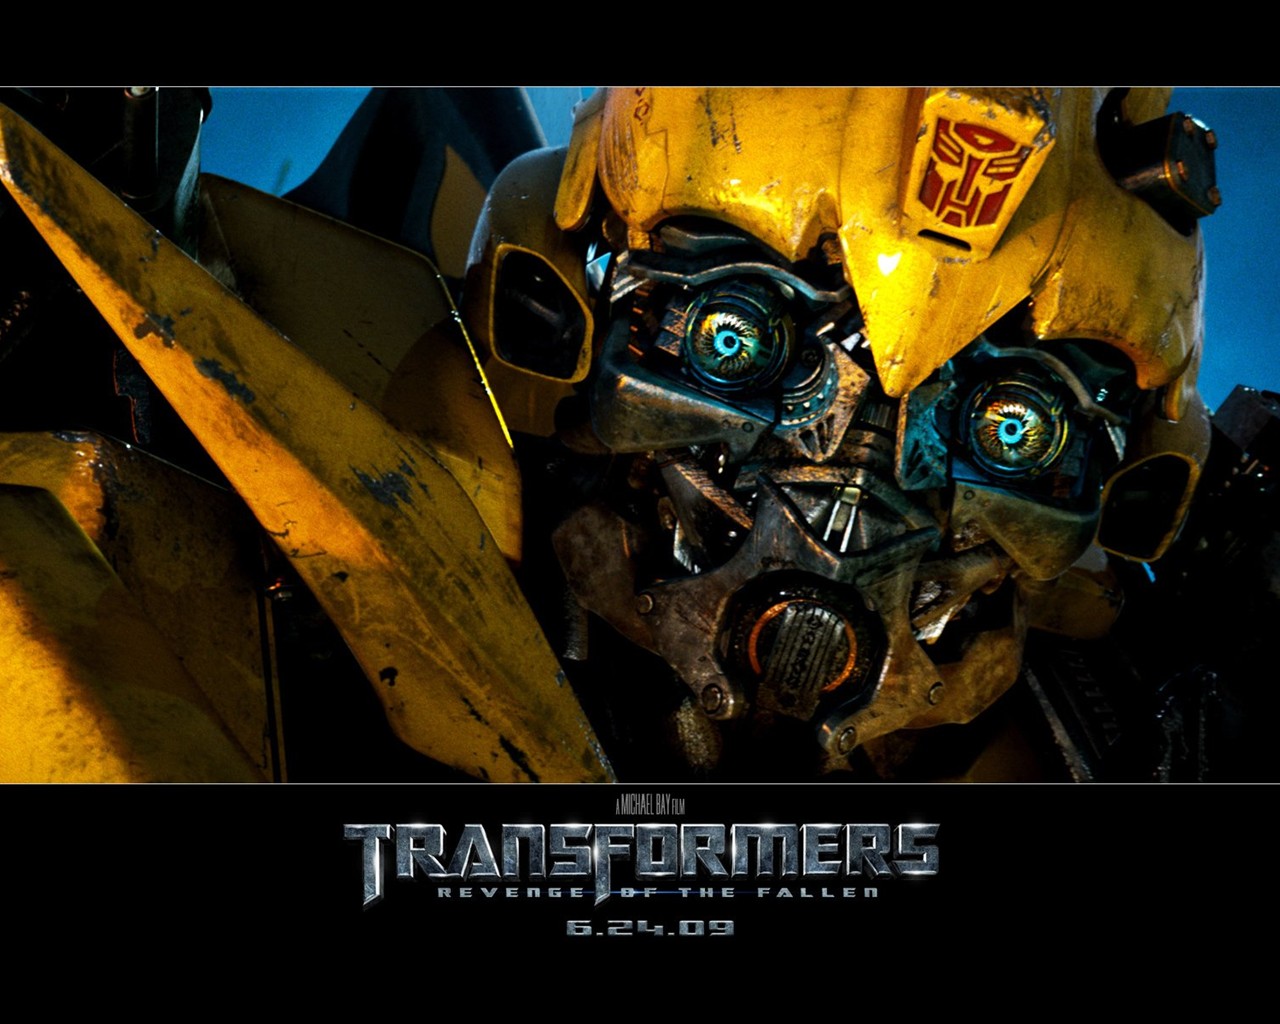 Transformers HD papel tapiz #7 - 1280x1024